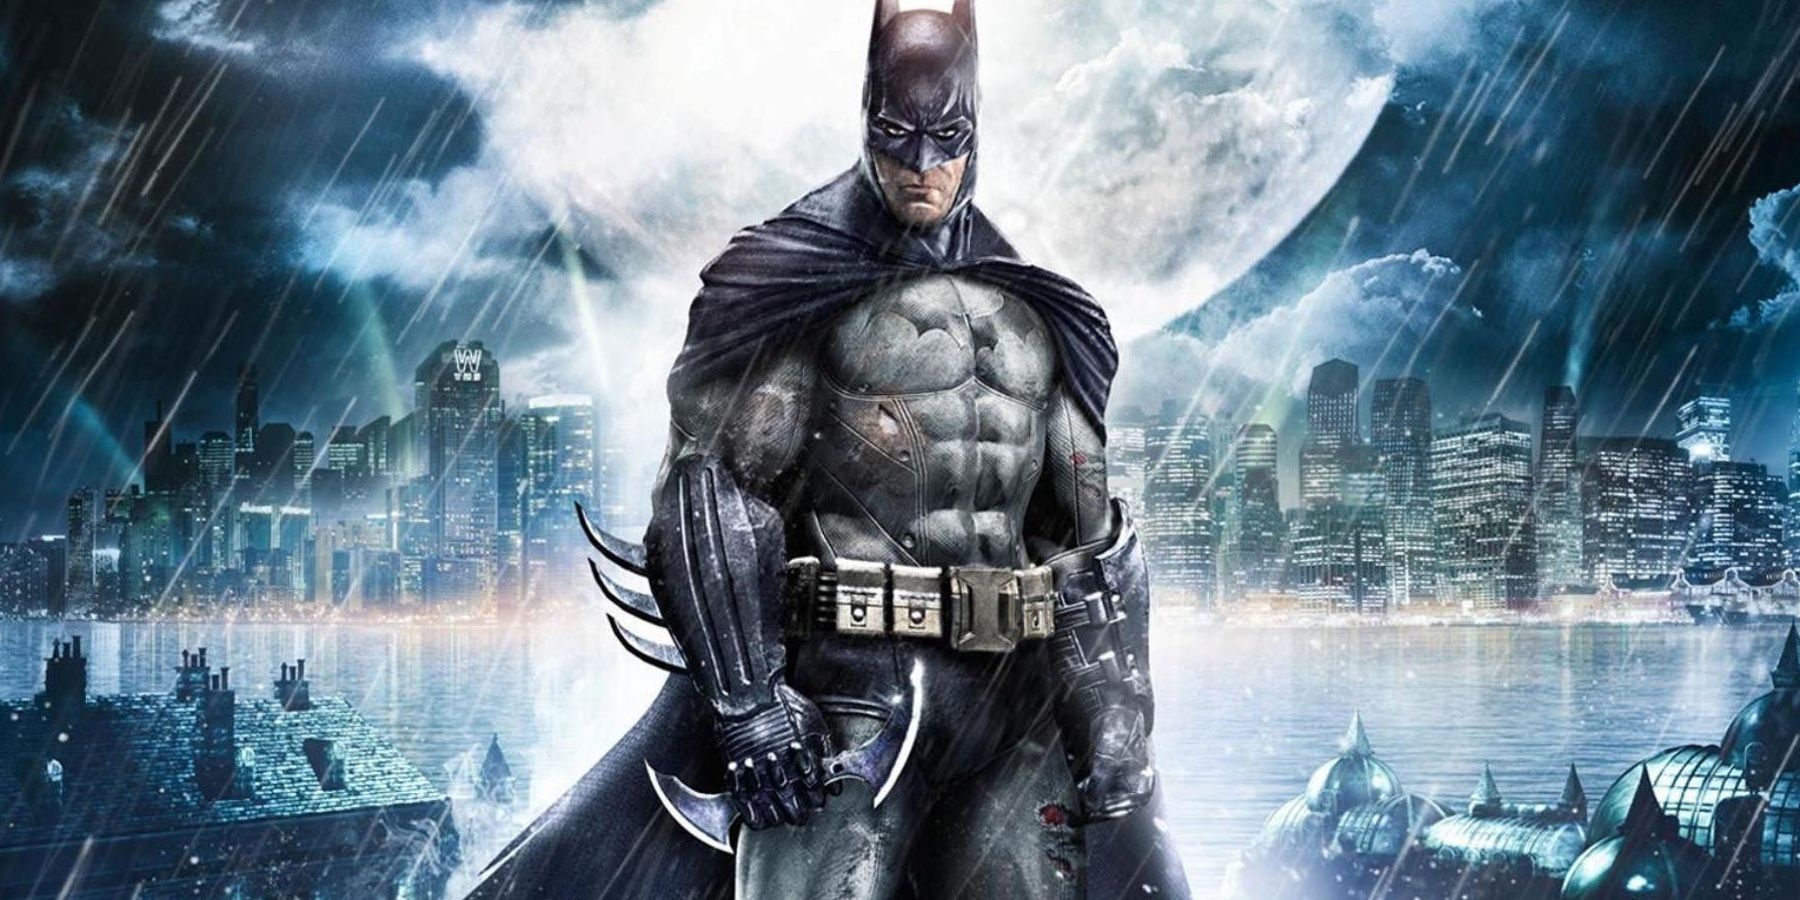 Batman Arkham Asylum Cover